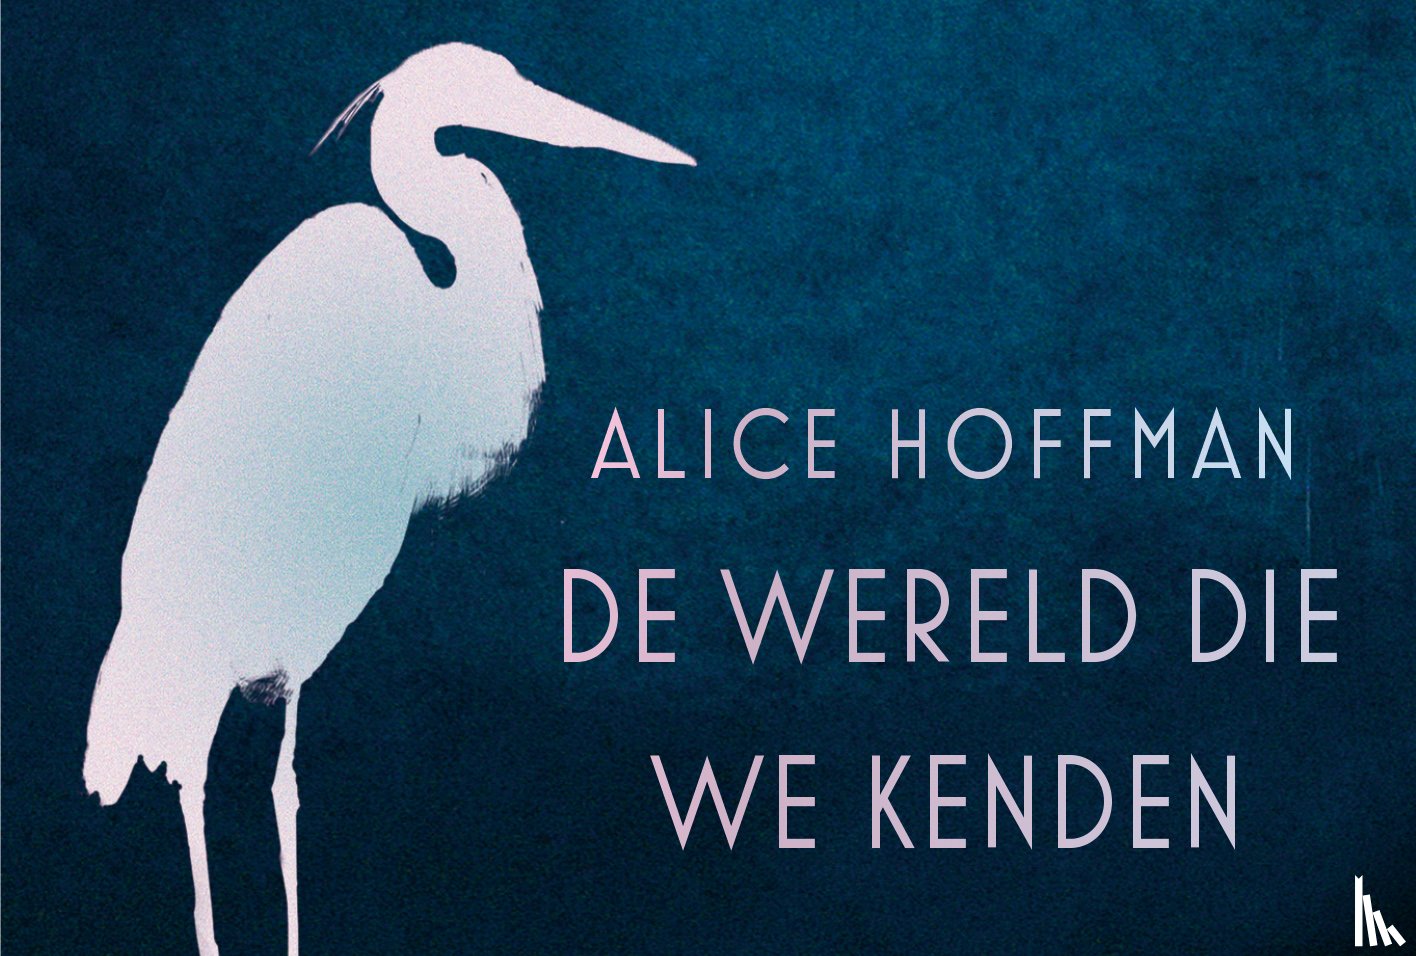 Hoffman, Alice - De wereld die we kenden